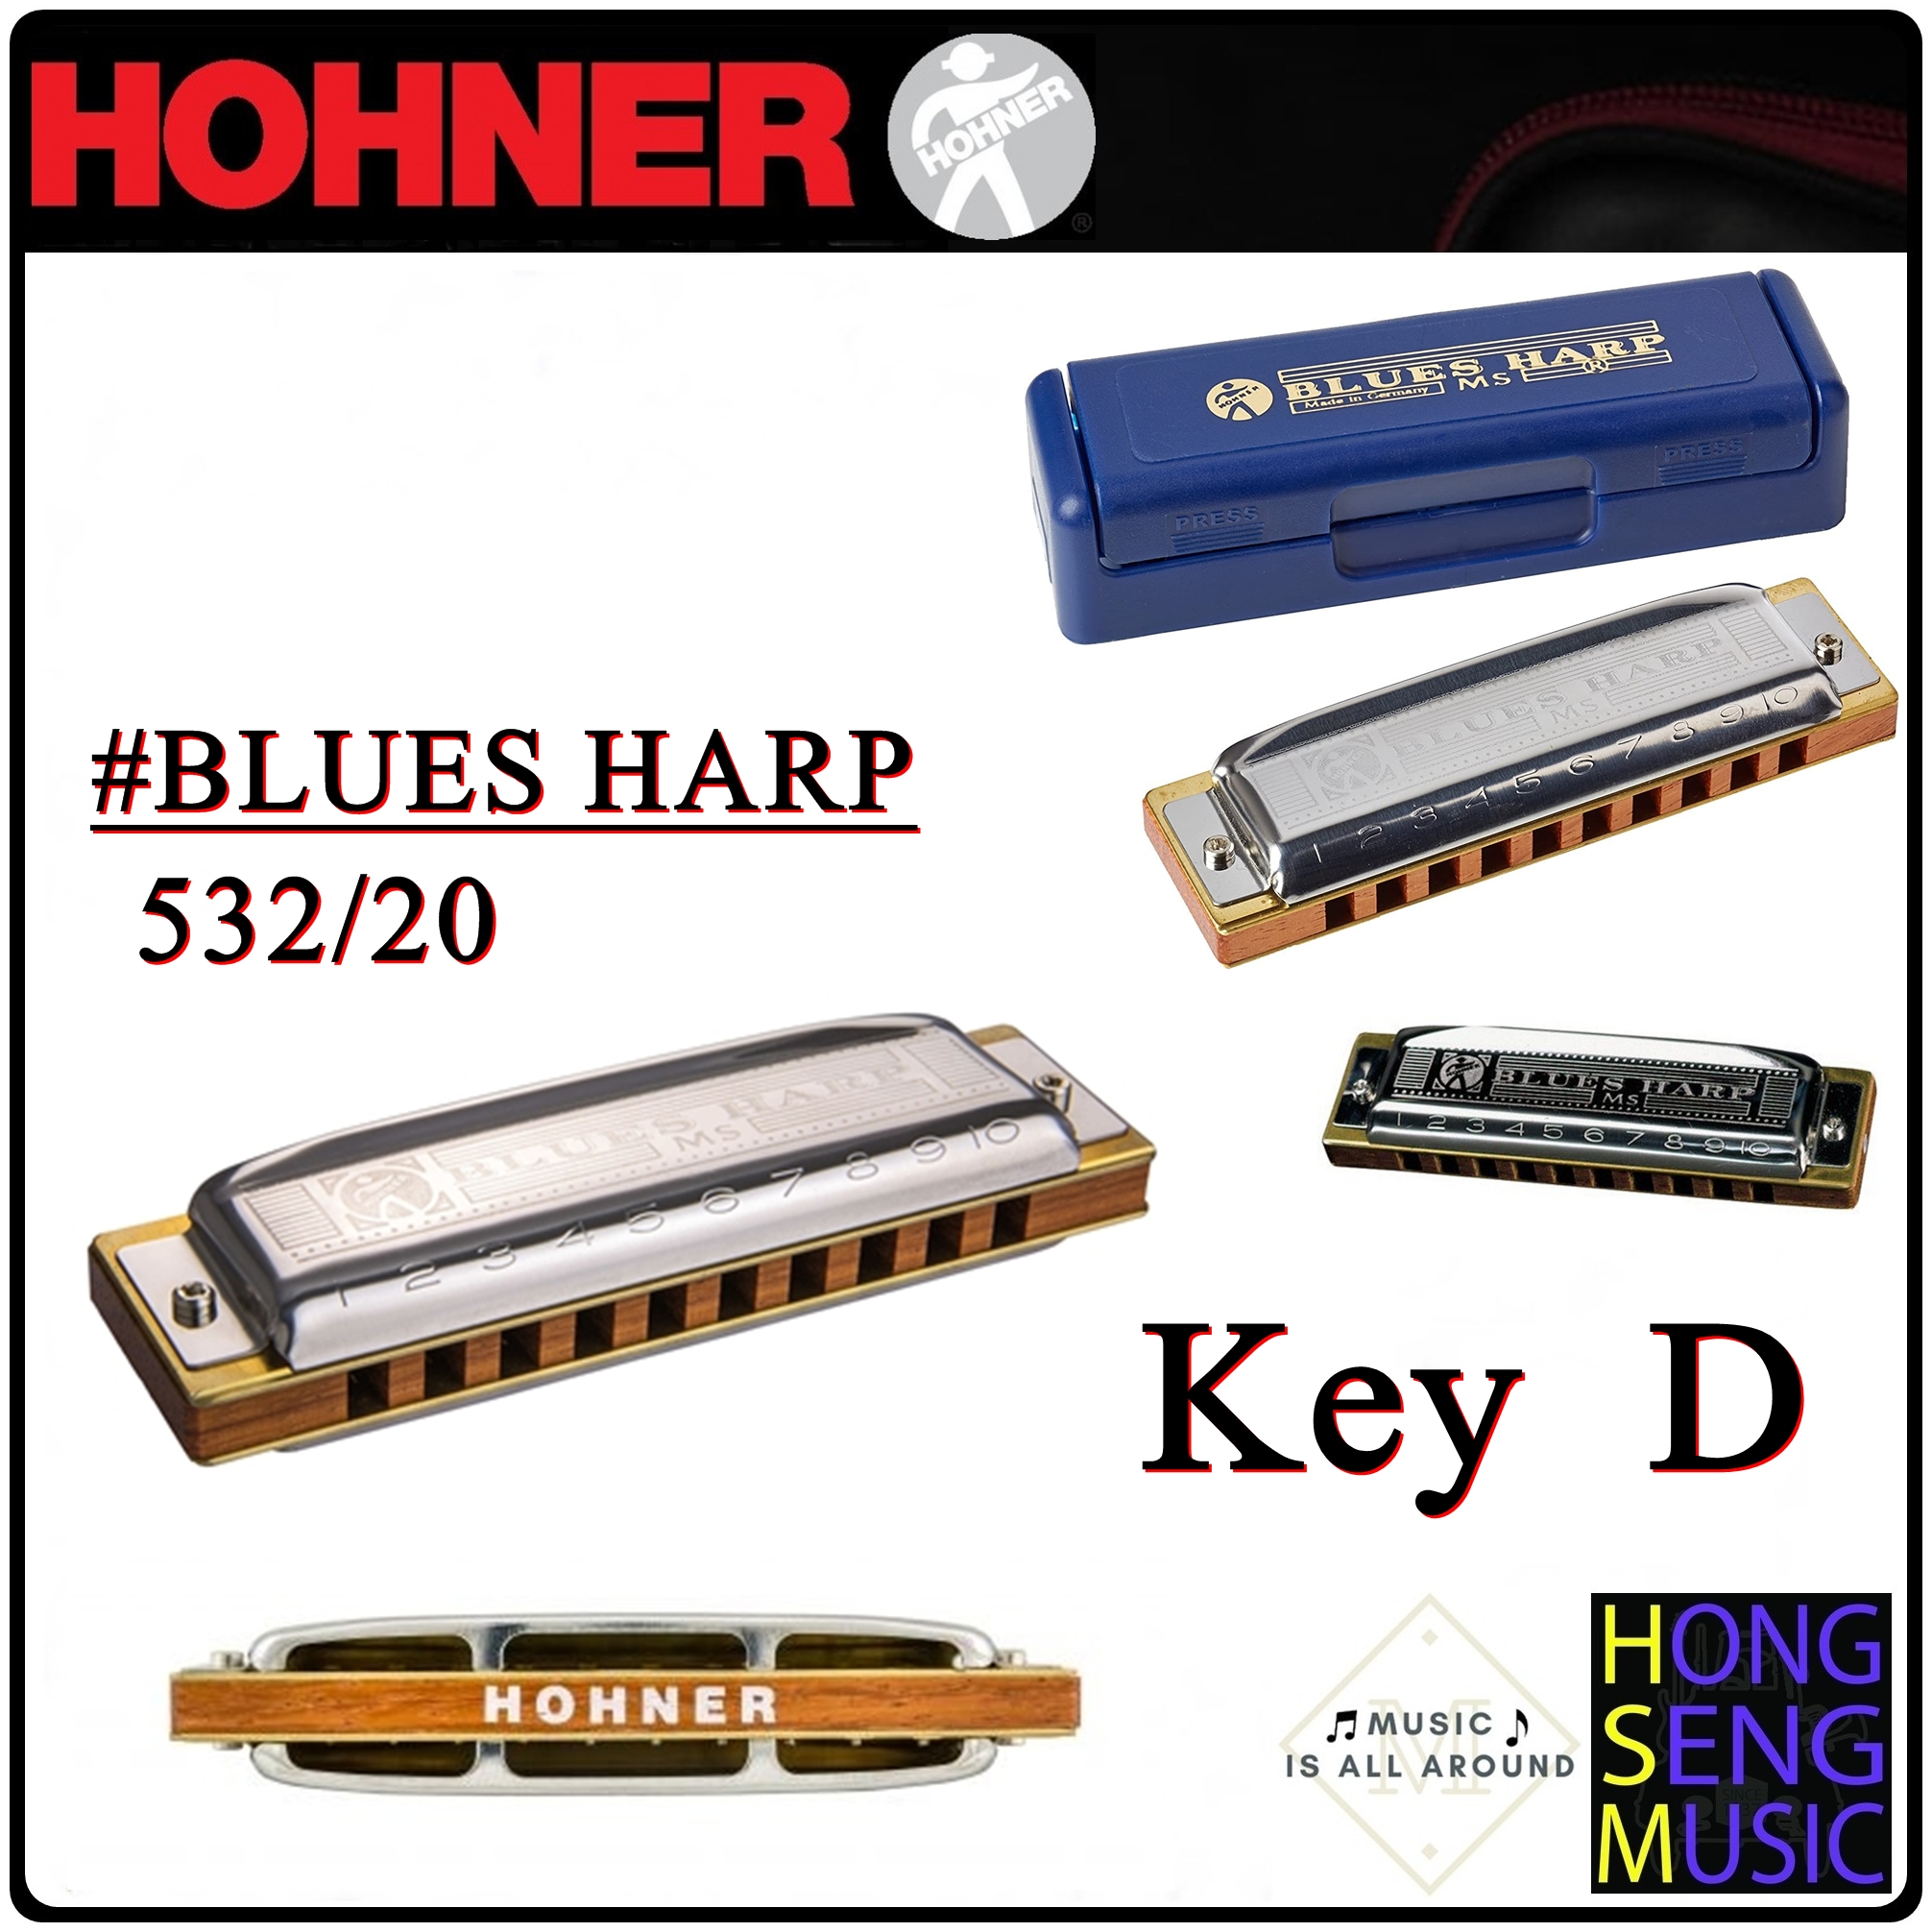 ฮาร์โมนิก้า (เม้าท์ออร์แกน) Hohner รุ่น BLUES HARP Harmonica 532/20 Key D